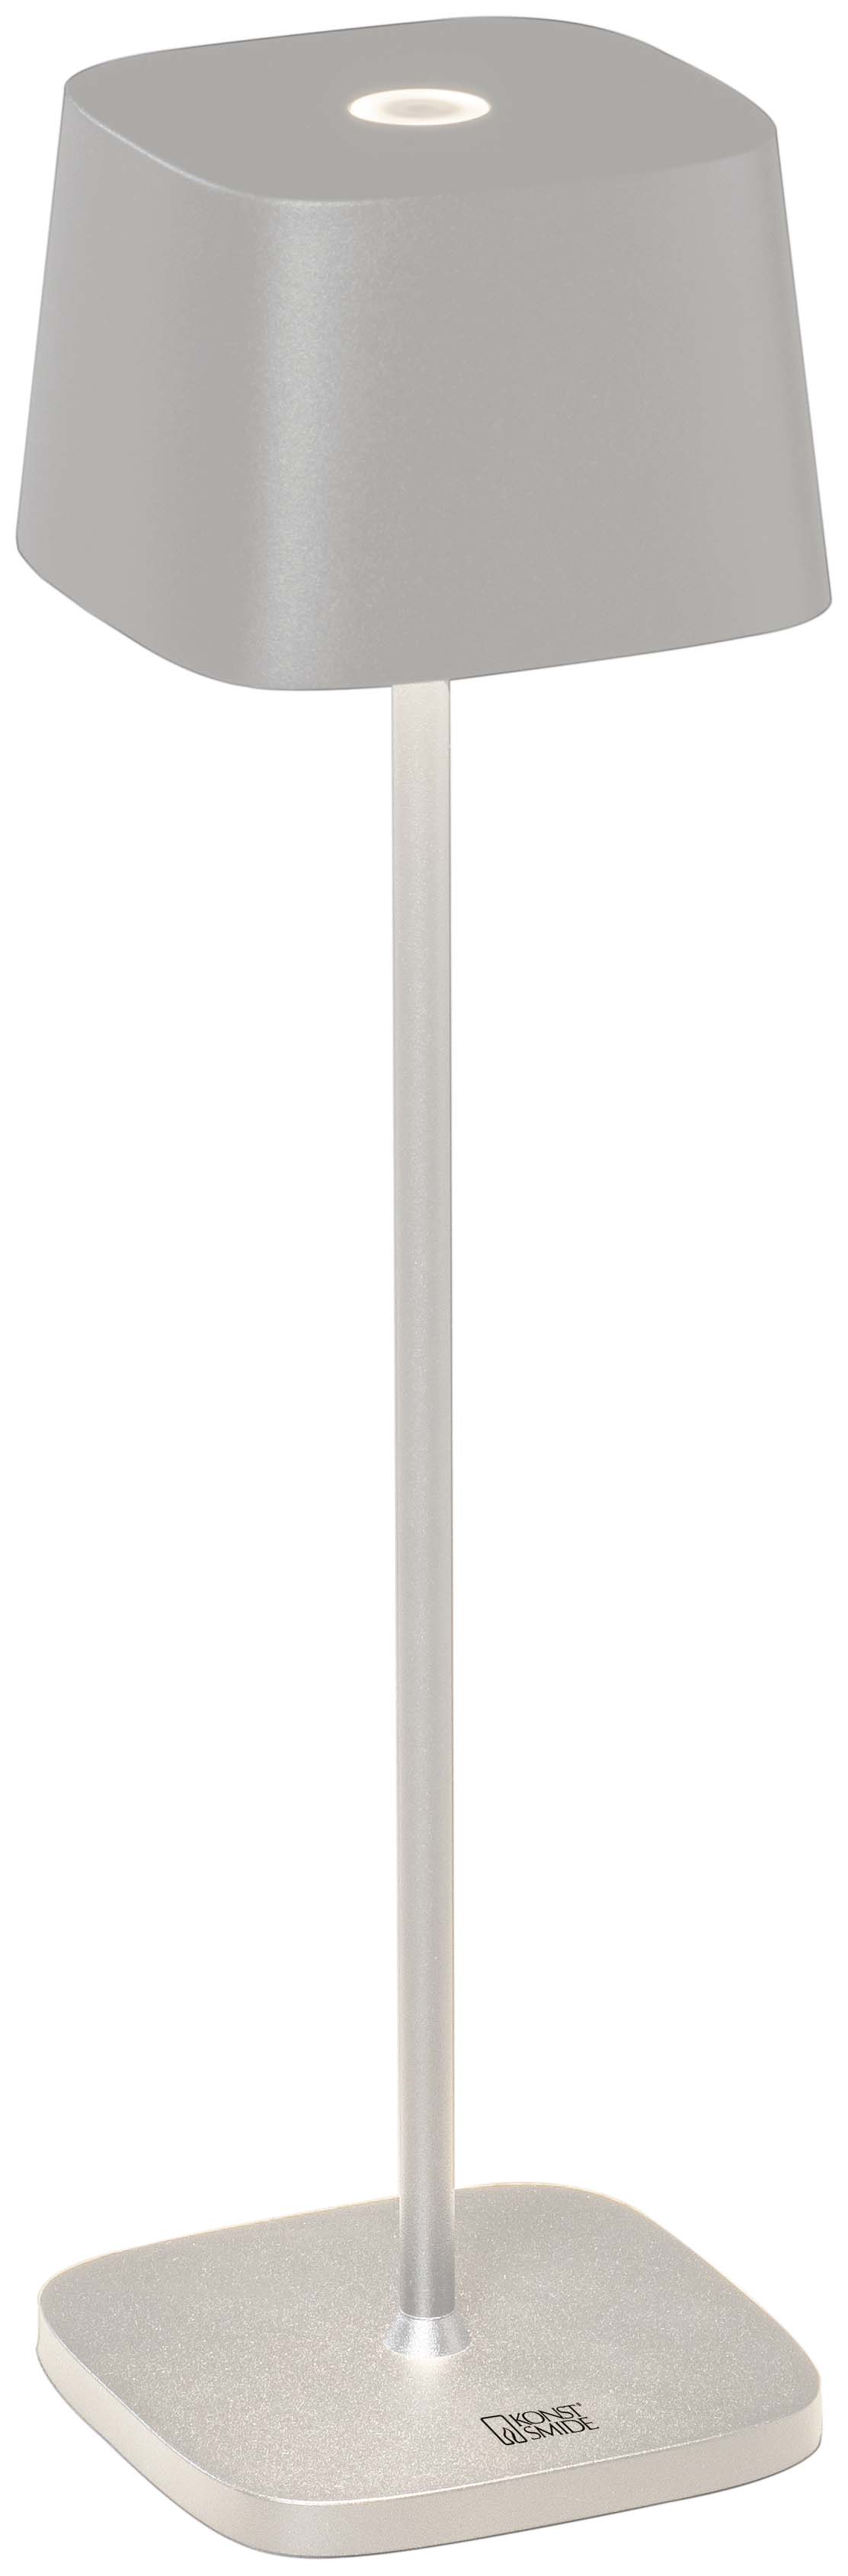 Capri weiß - LED Tischleuchte - USB aufladbar - 36x10cm